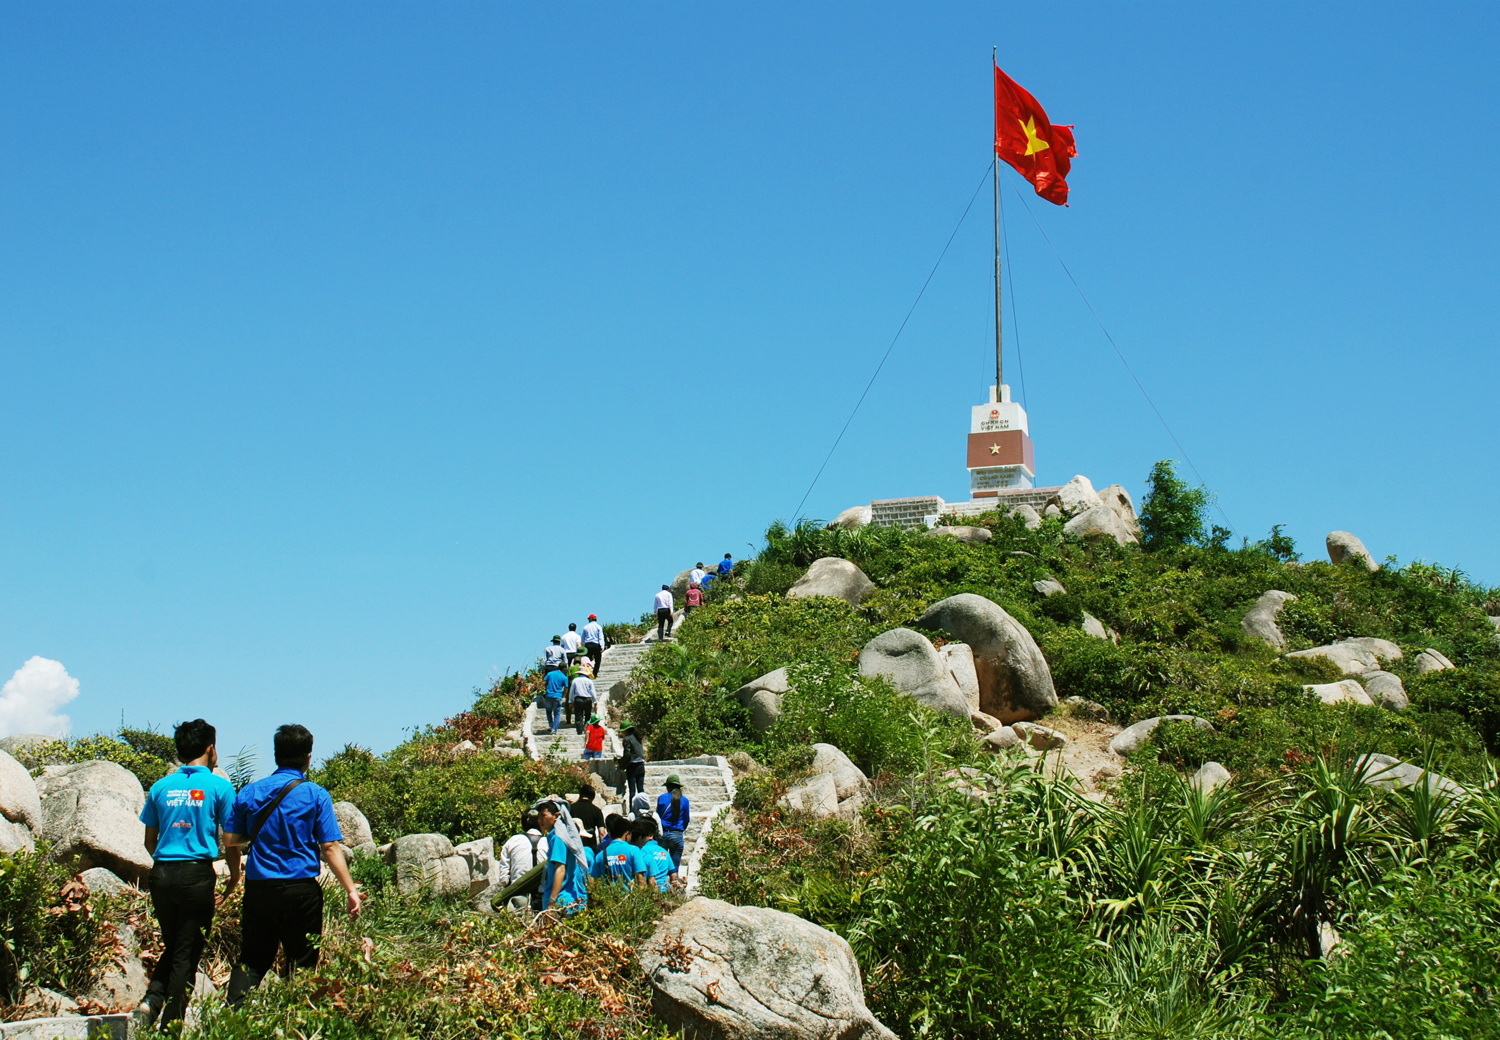 Các Đoàn viên, sinh viên tham quan cột cờ Tổ quốc trên đảo Cù Lao Xanh - Ảnh: Hoa Khá.